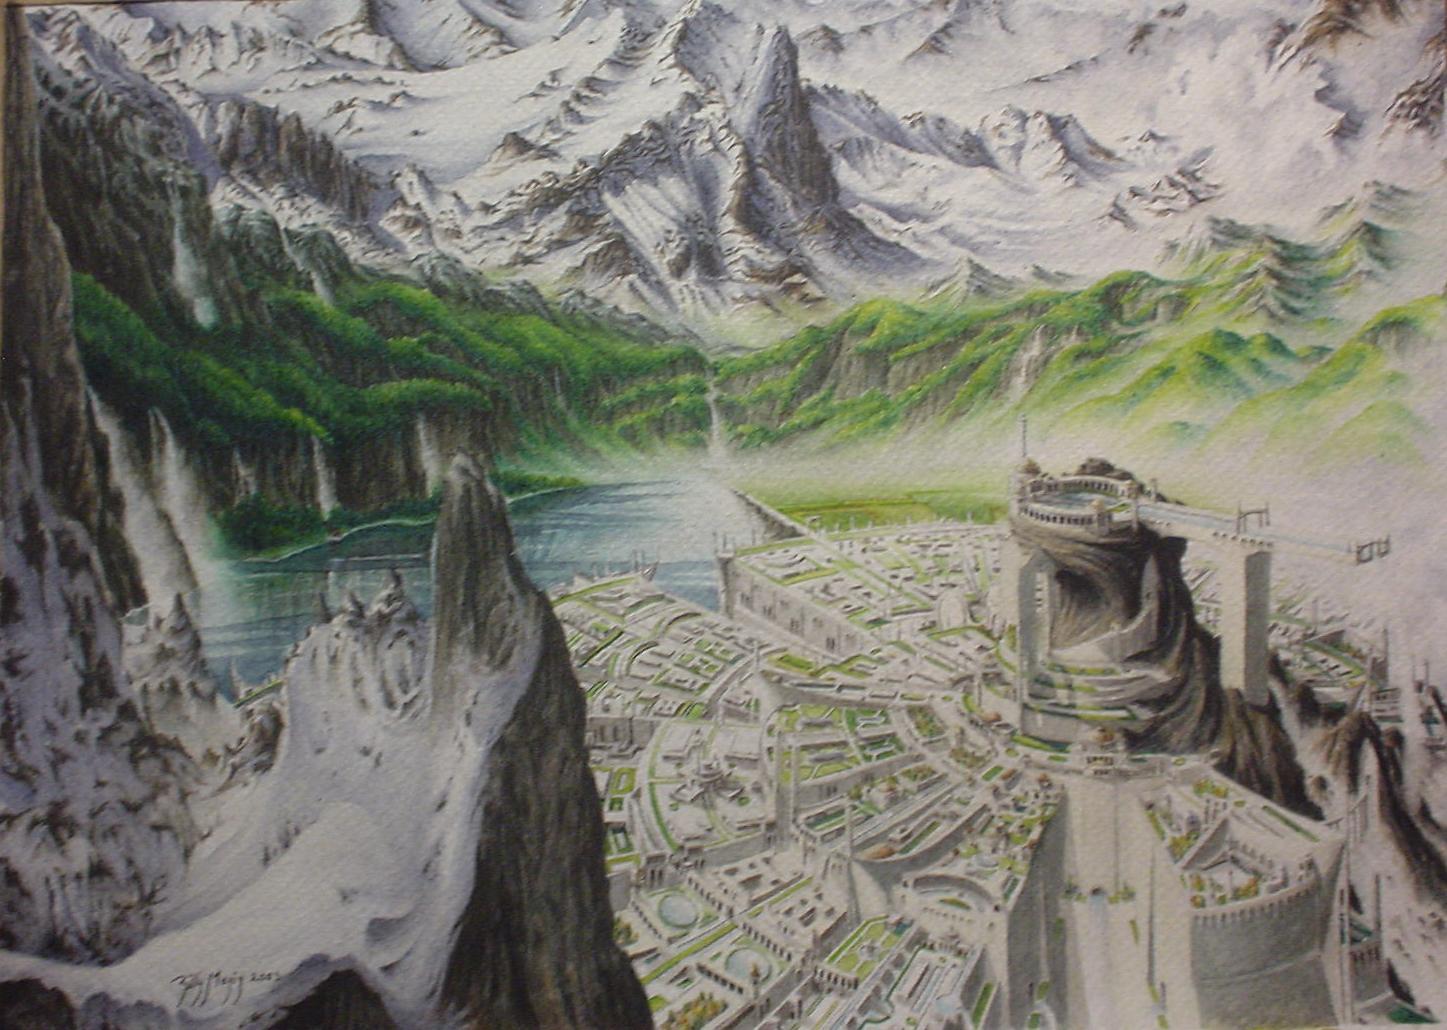 Location of Gondolin? : r/lotr